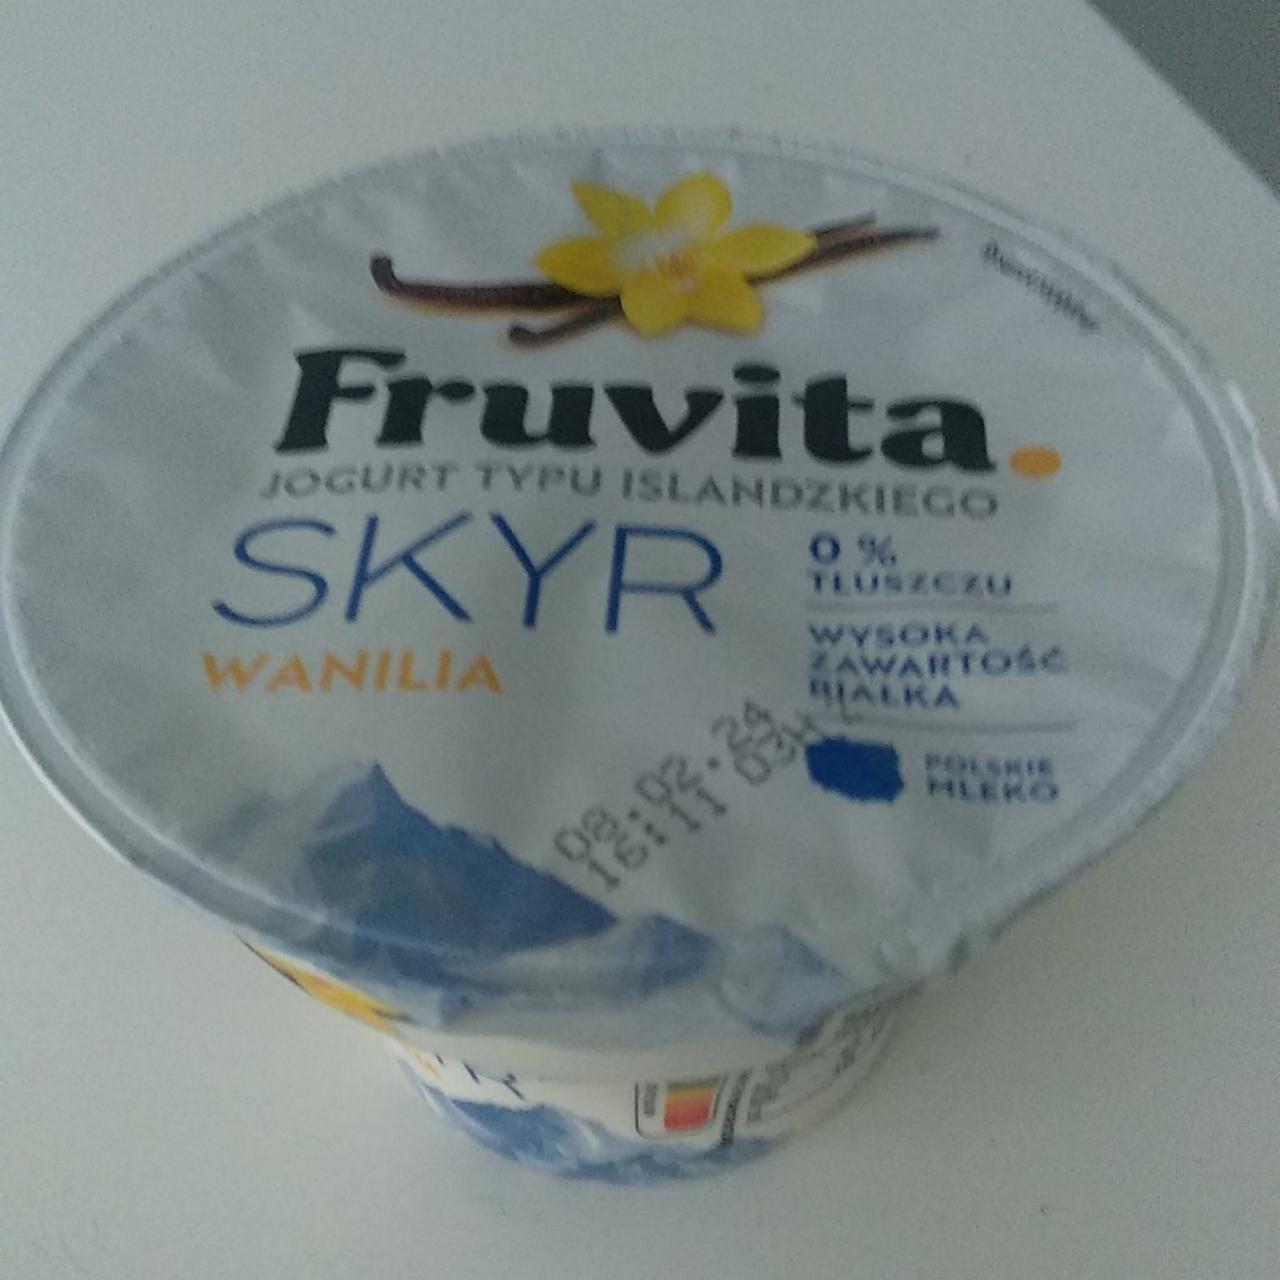 Zdjęcia - Jogurt typu islandzkiego Skyr wanilia 0% FruVita